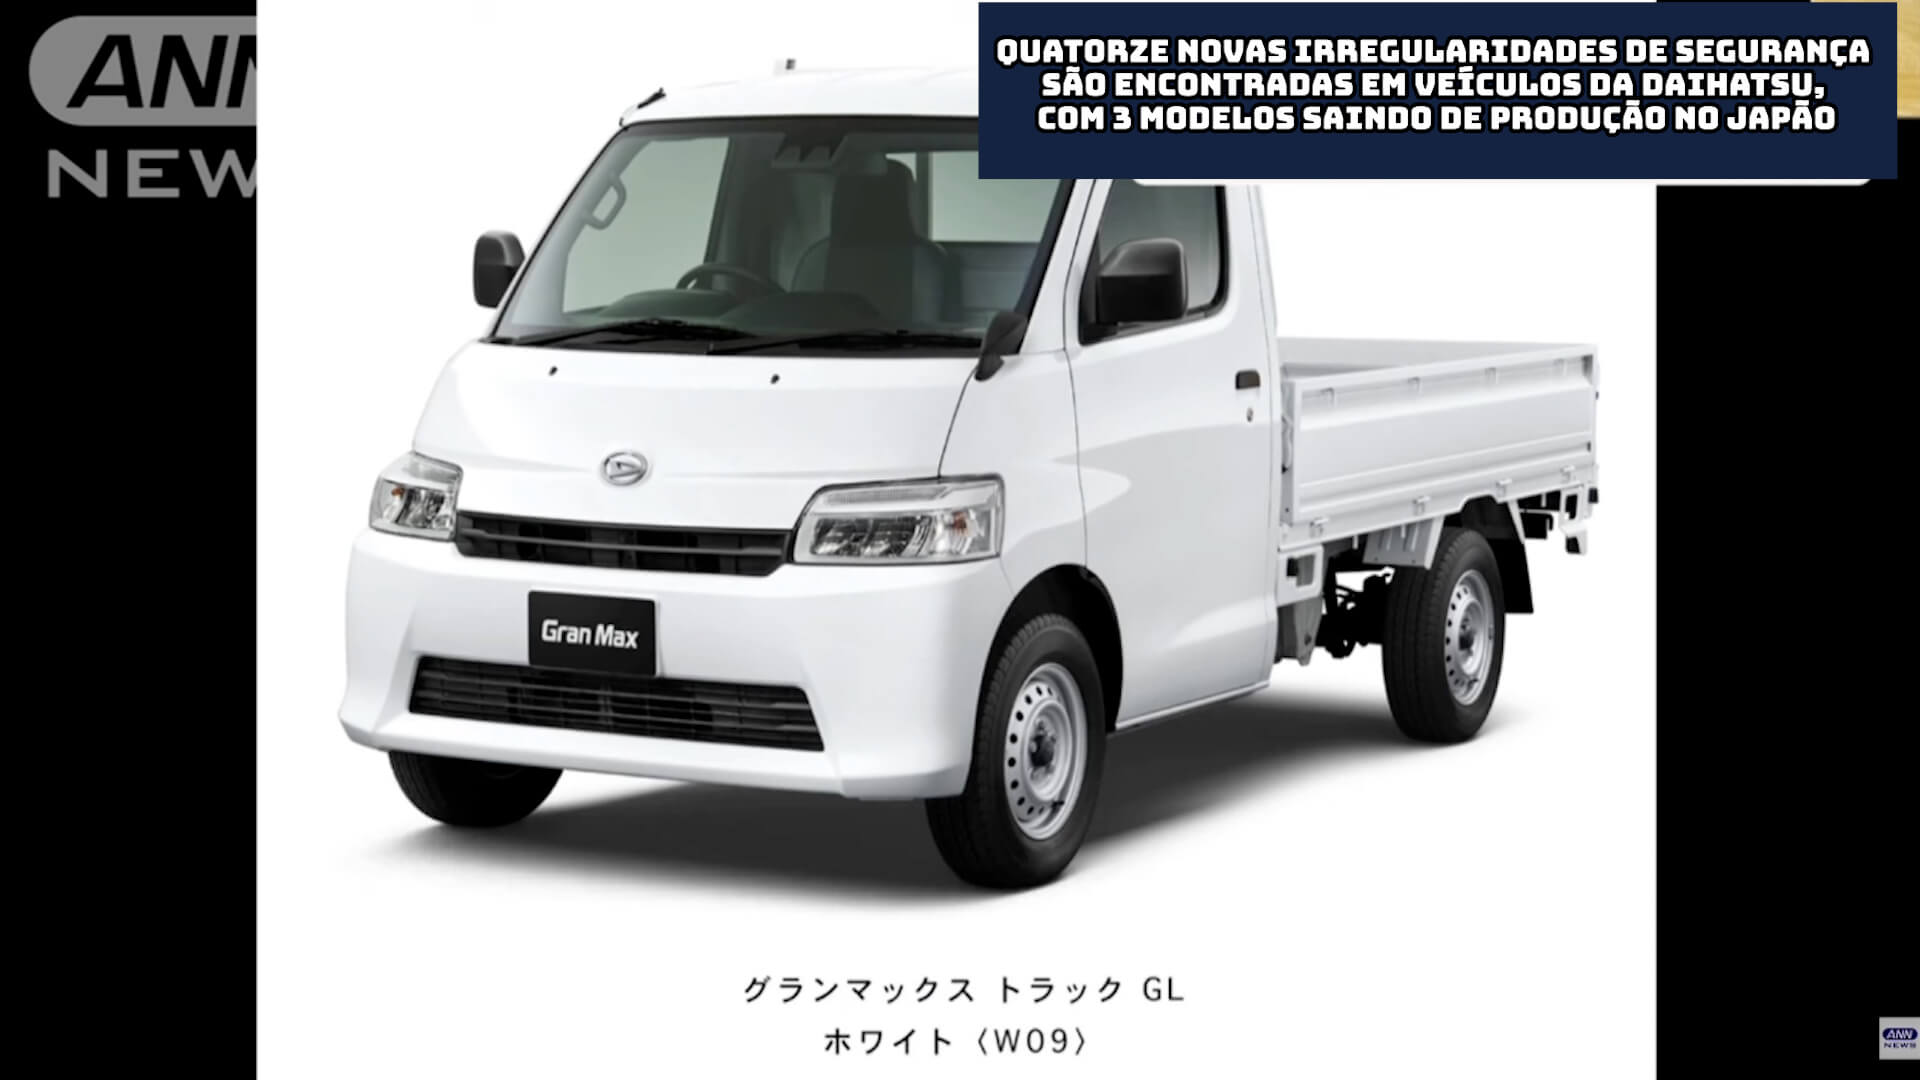 Quatorze novas irregularidades de segurança são encontradas em veículos da Daihatsu, com 3 modelos saindo de produção no Japão 